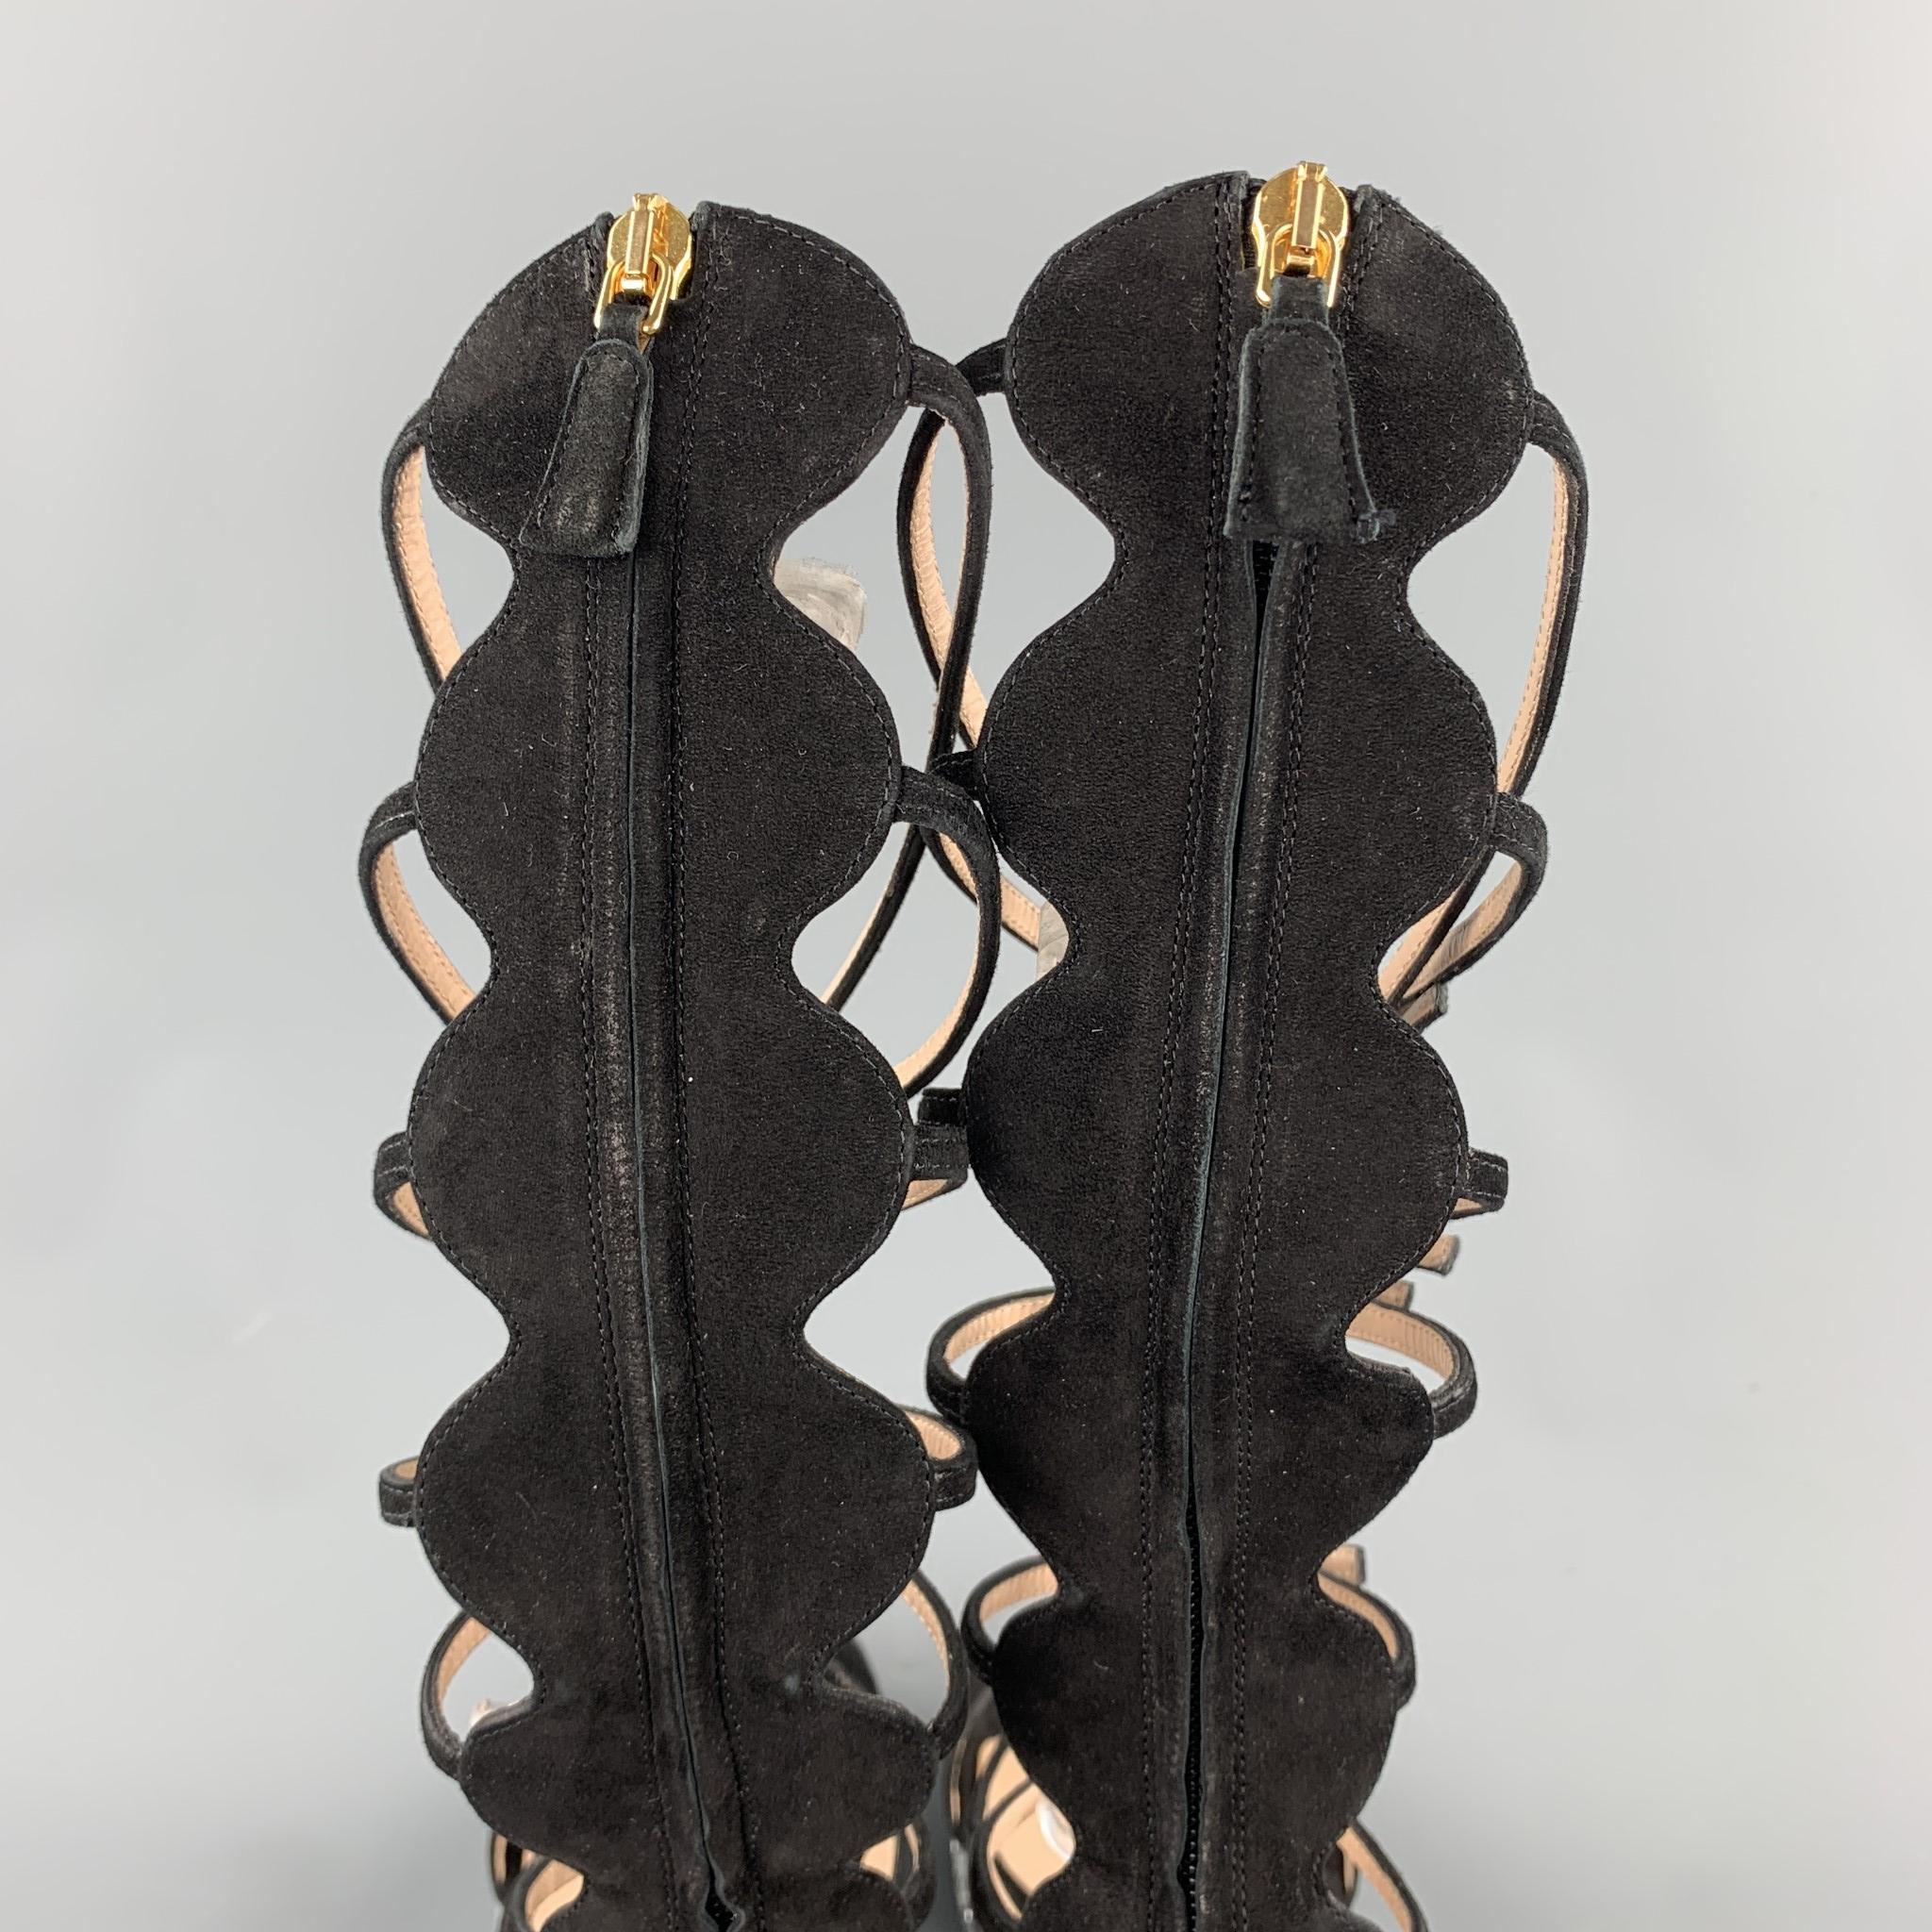 Women's GIAMBATTISTA VALLI S/S 2016 Size 8 Black Suede Glitter Gladiator Sandals